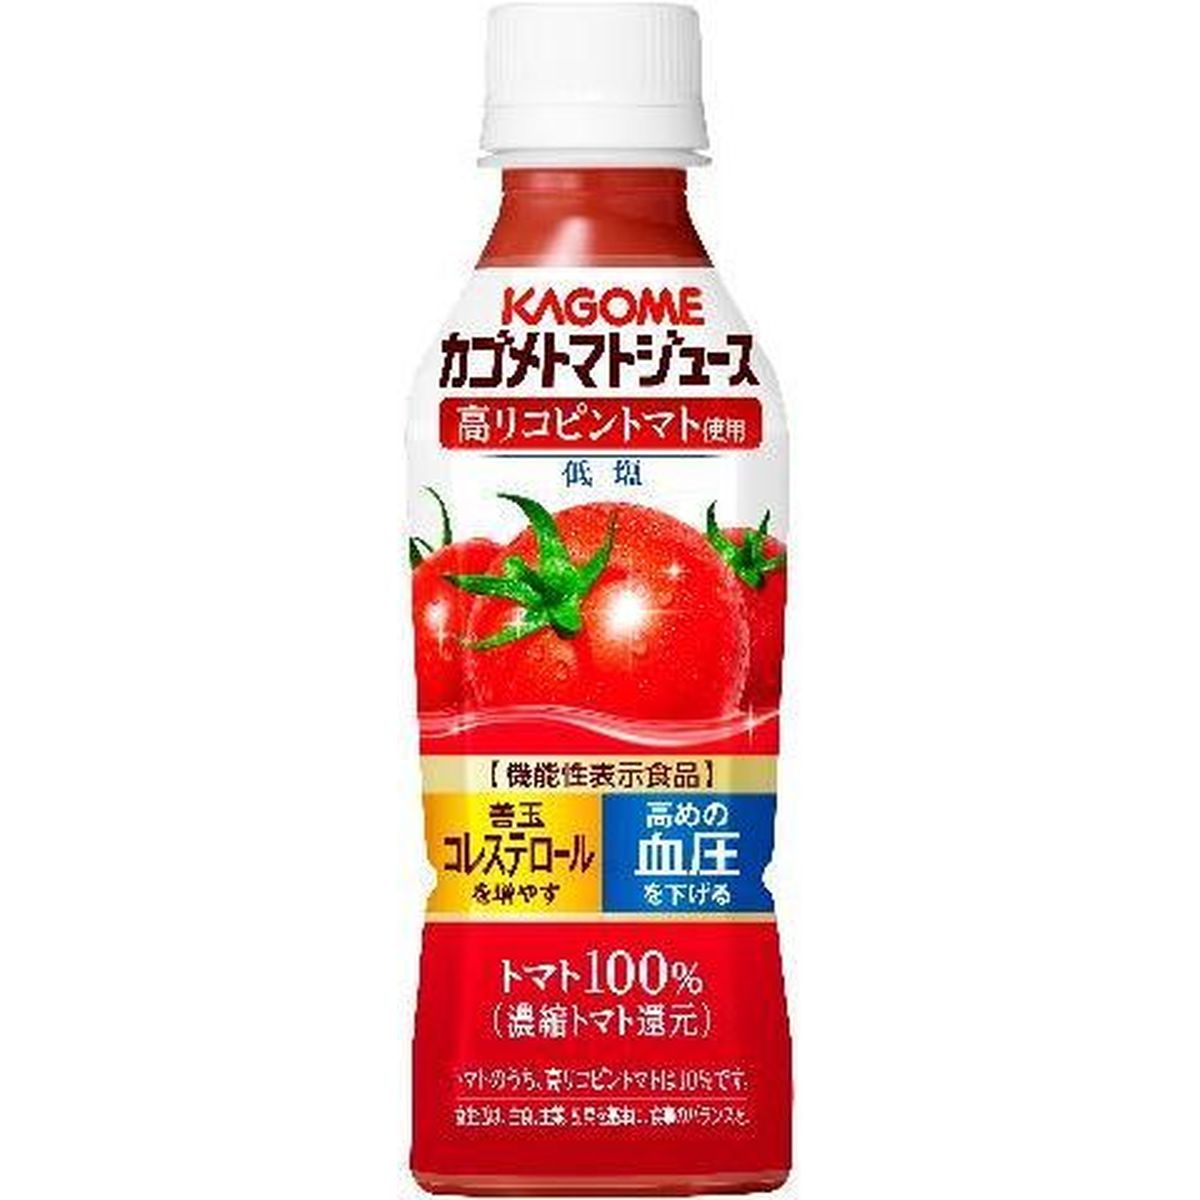 【24個入リ】カゴメ トマトジュース 高リコピントマト 265g